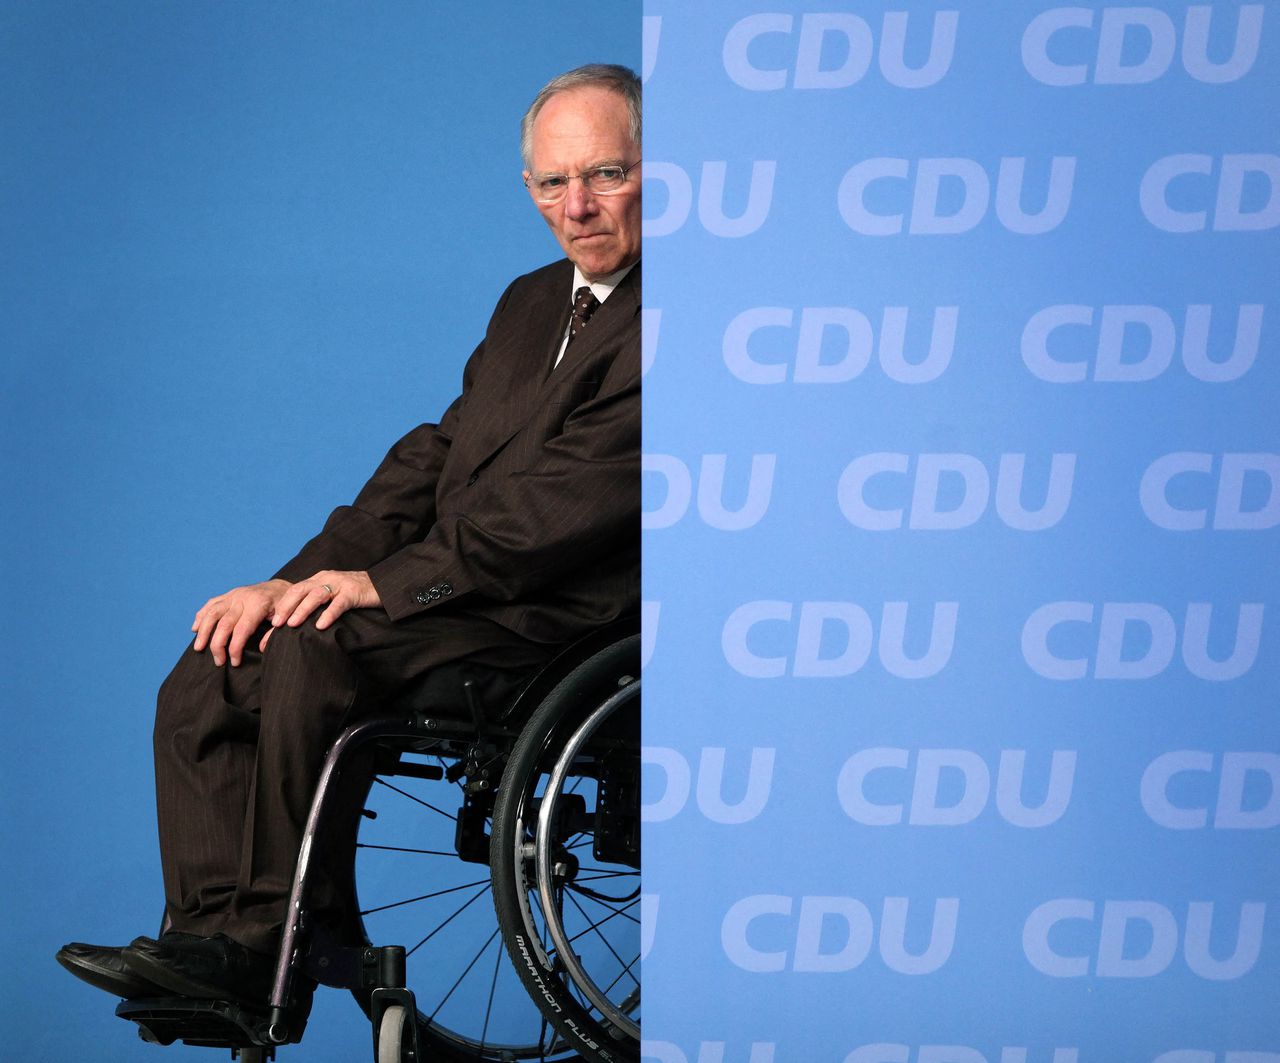 Duitse oud-minister van Financiën Schäuble (81) overleden 